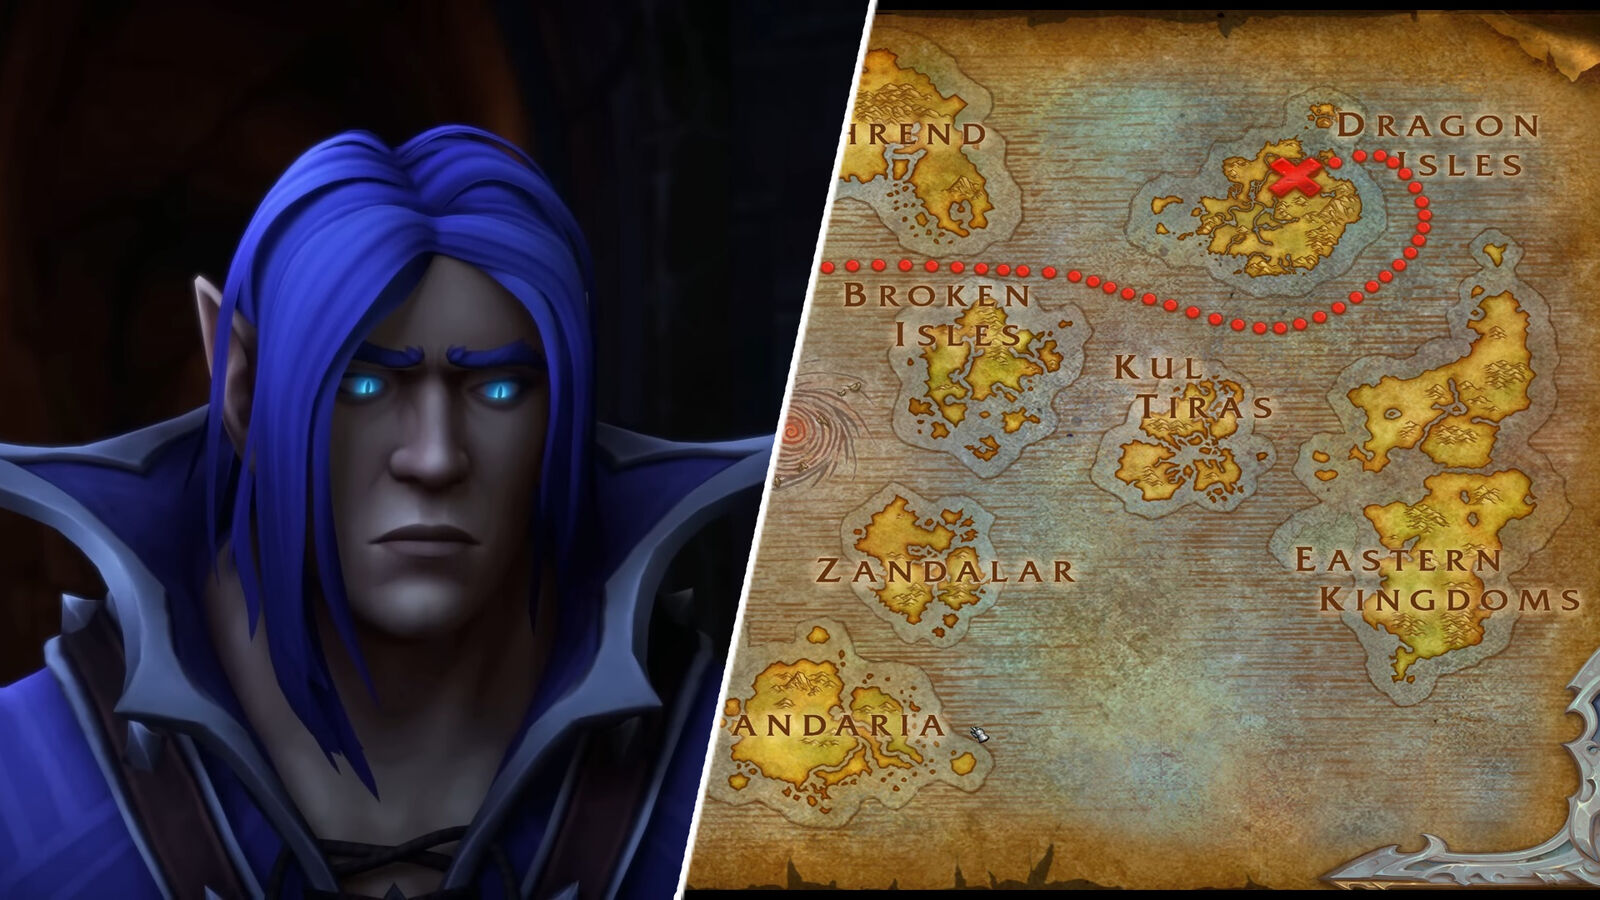 Premiera World of Warcraft: Dragonflight była sprawdzianem wytrzymałości